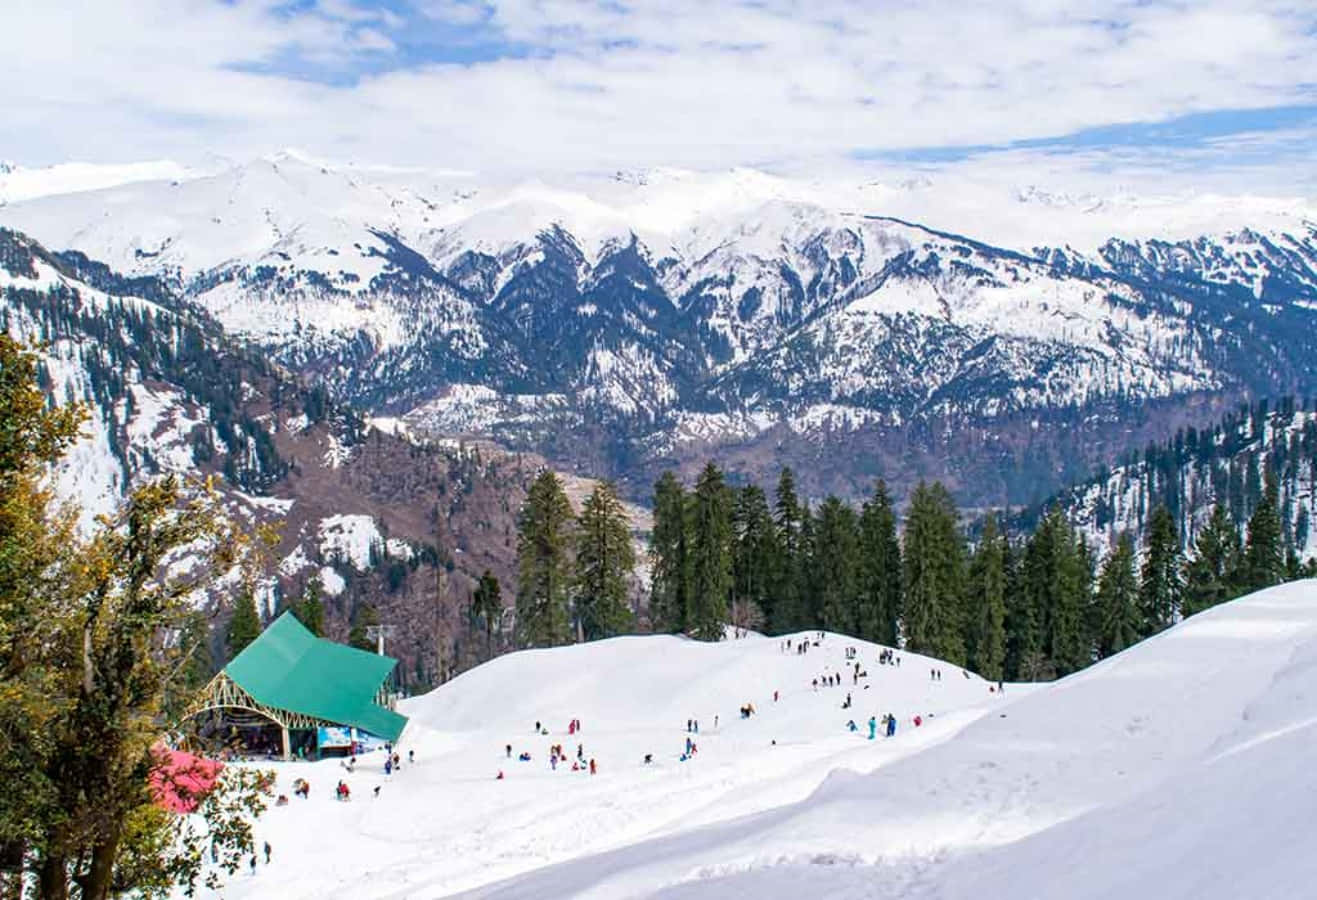 Einegruppe Von Menschen Fährt Auf Skiern Einen Verschneiten Hang Hinunter.